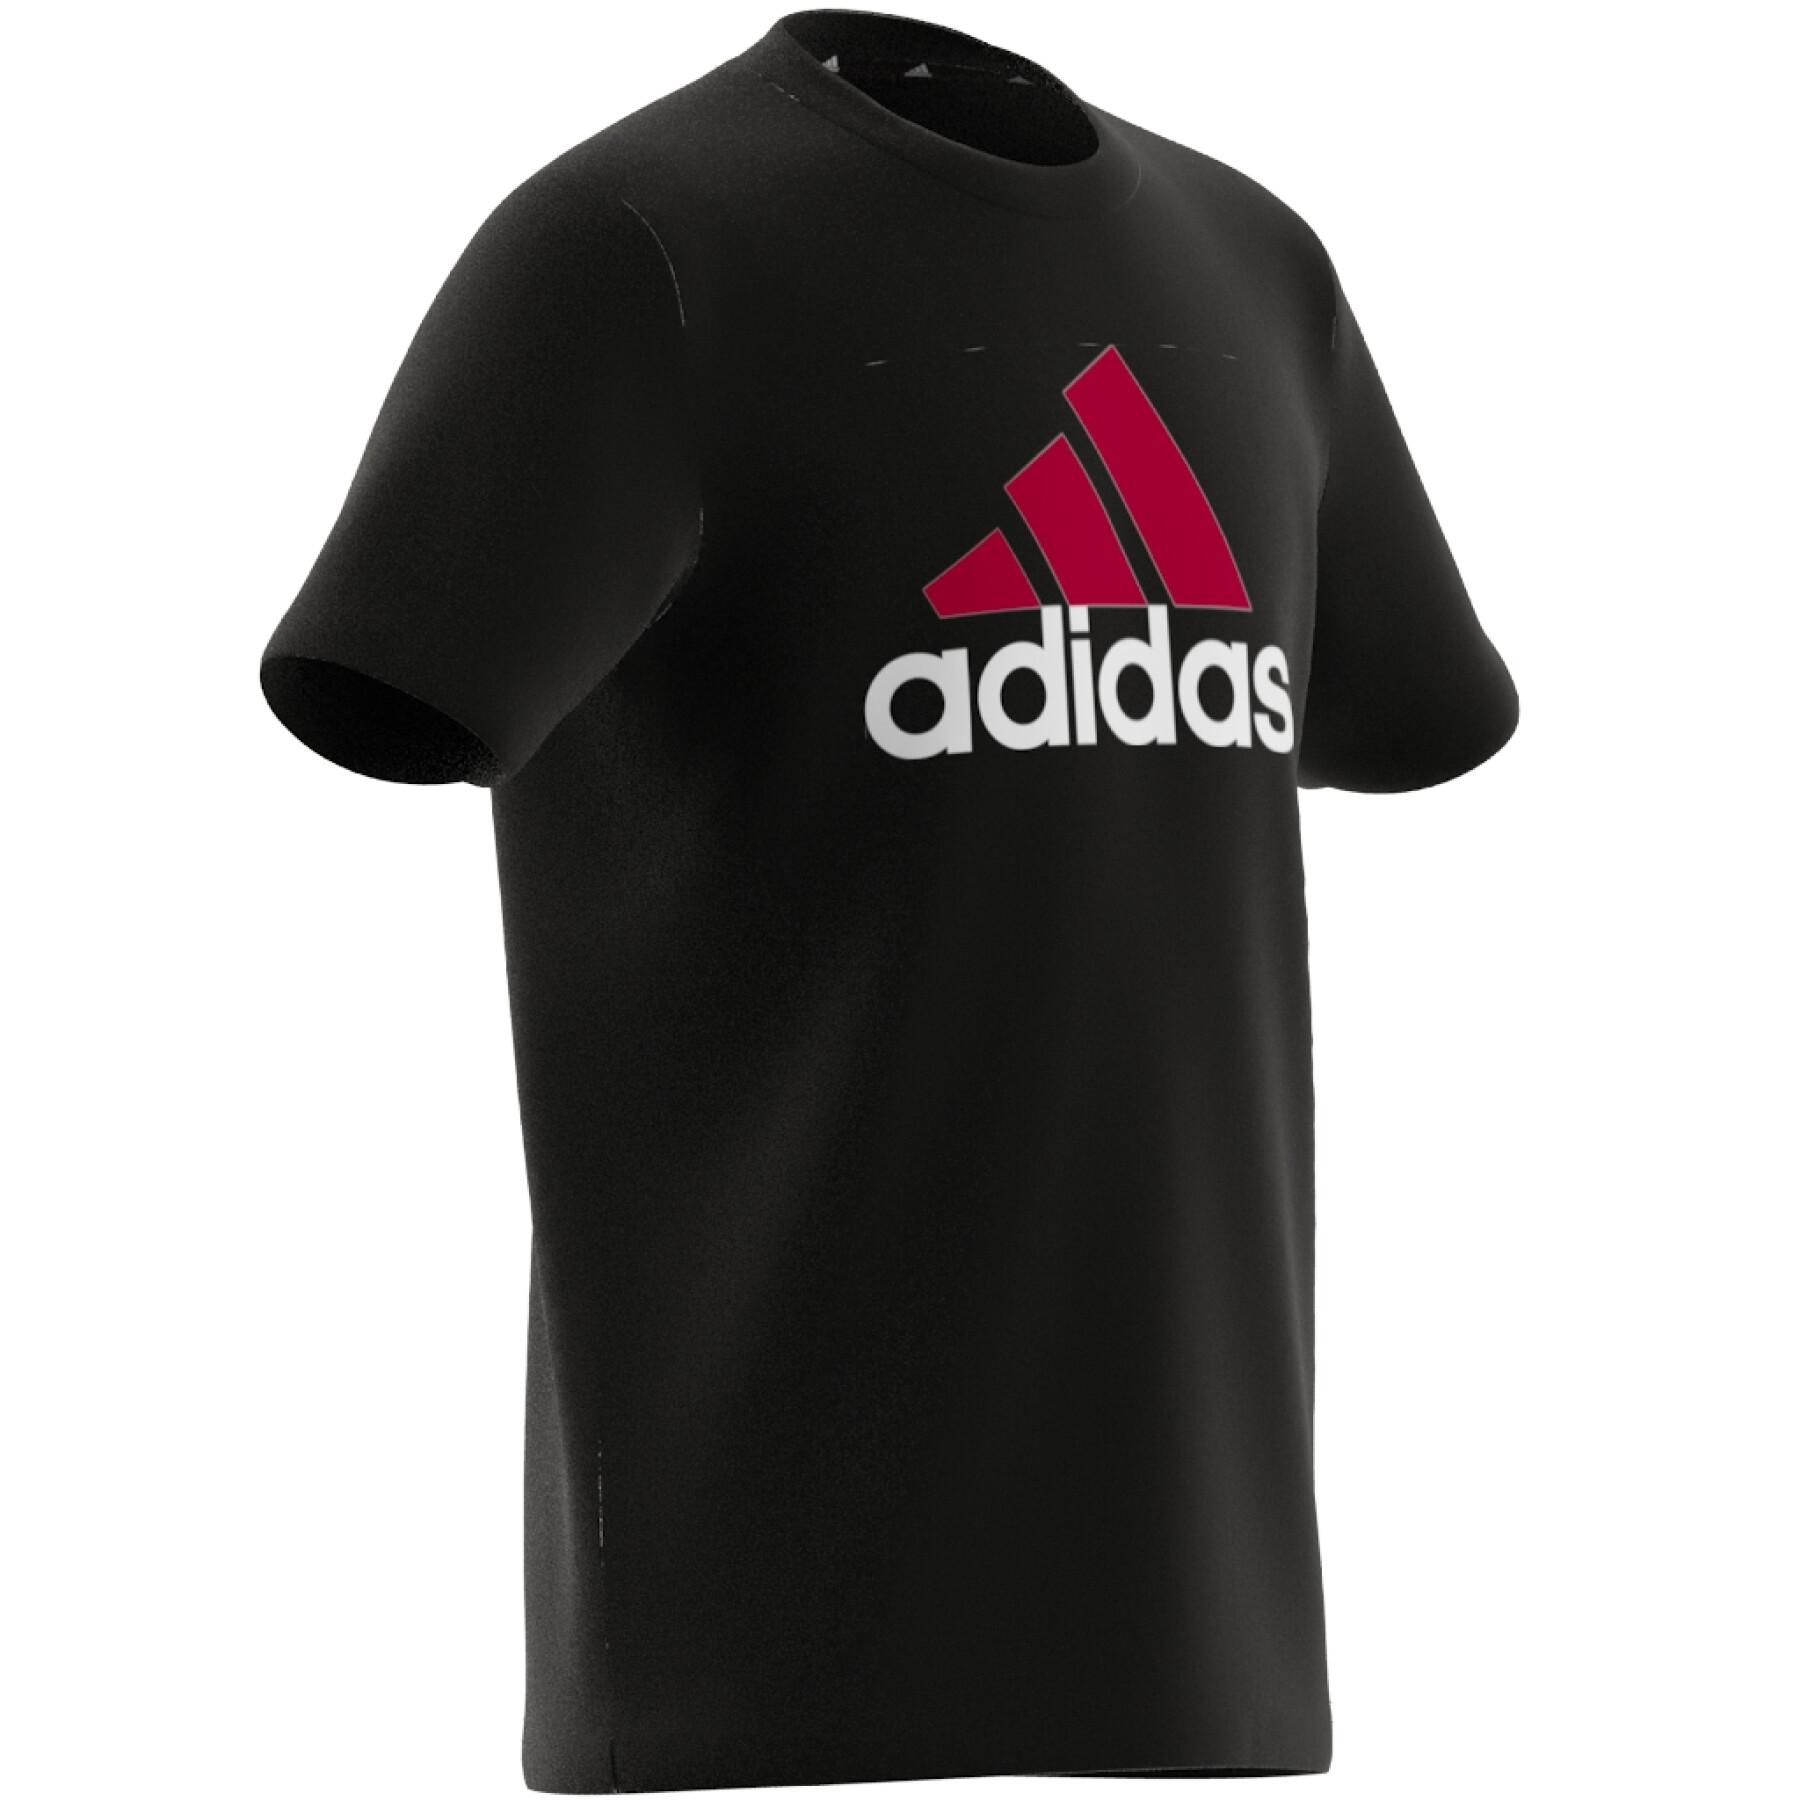 T-shirt taglie comode da bambino in cotone bicolore con logo Adidas Essentials